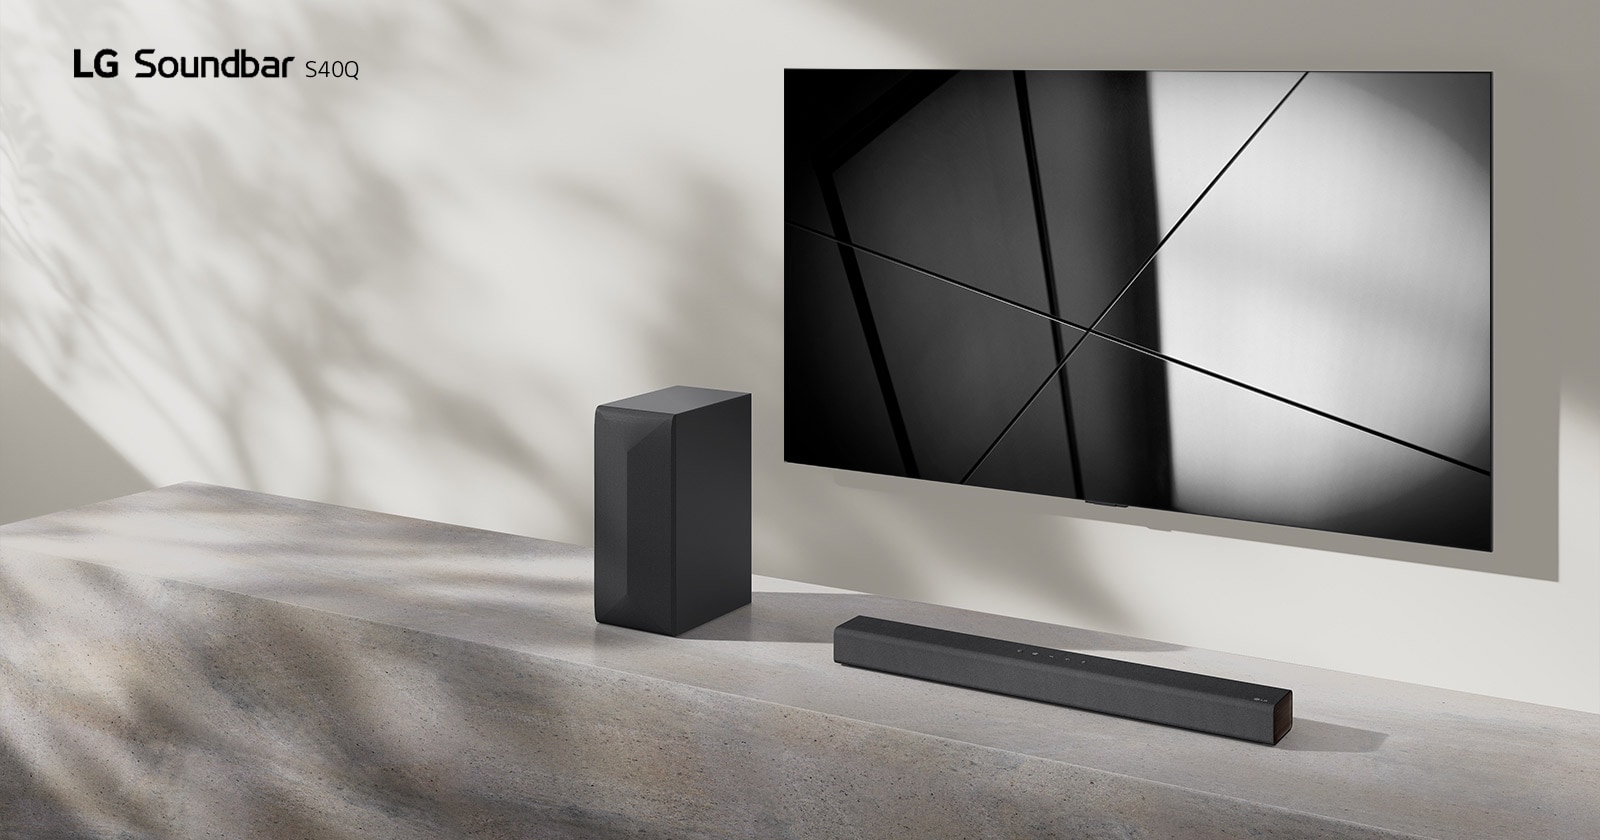 LG Sound Bar S40Q i LG TV postavljeni su zajedno u dnevnoj sobi. Televizor je uključen i prikazuje geometrijsku sliku.